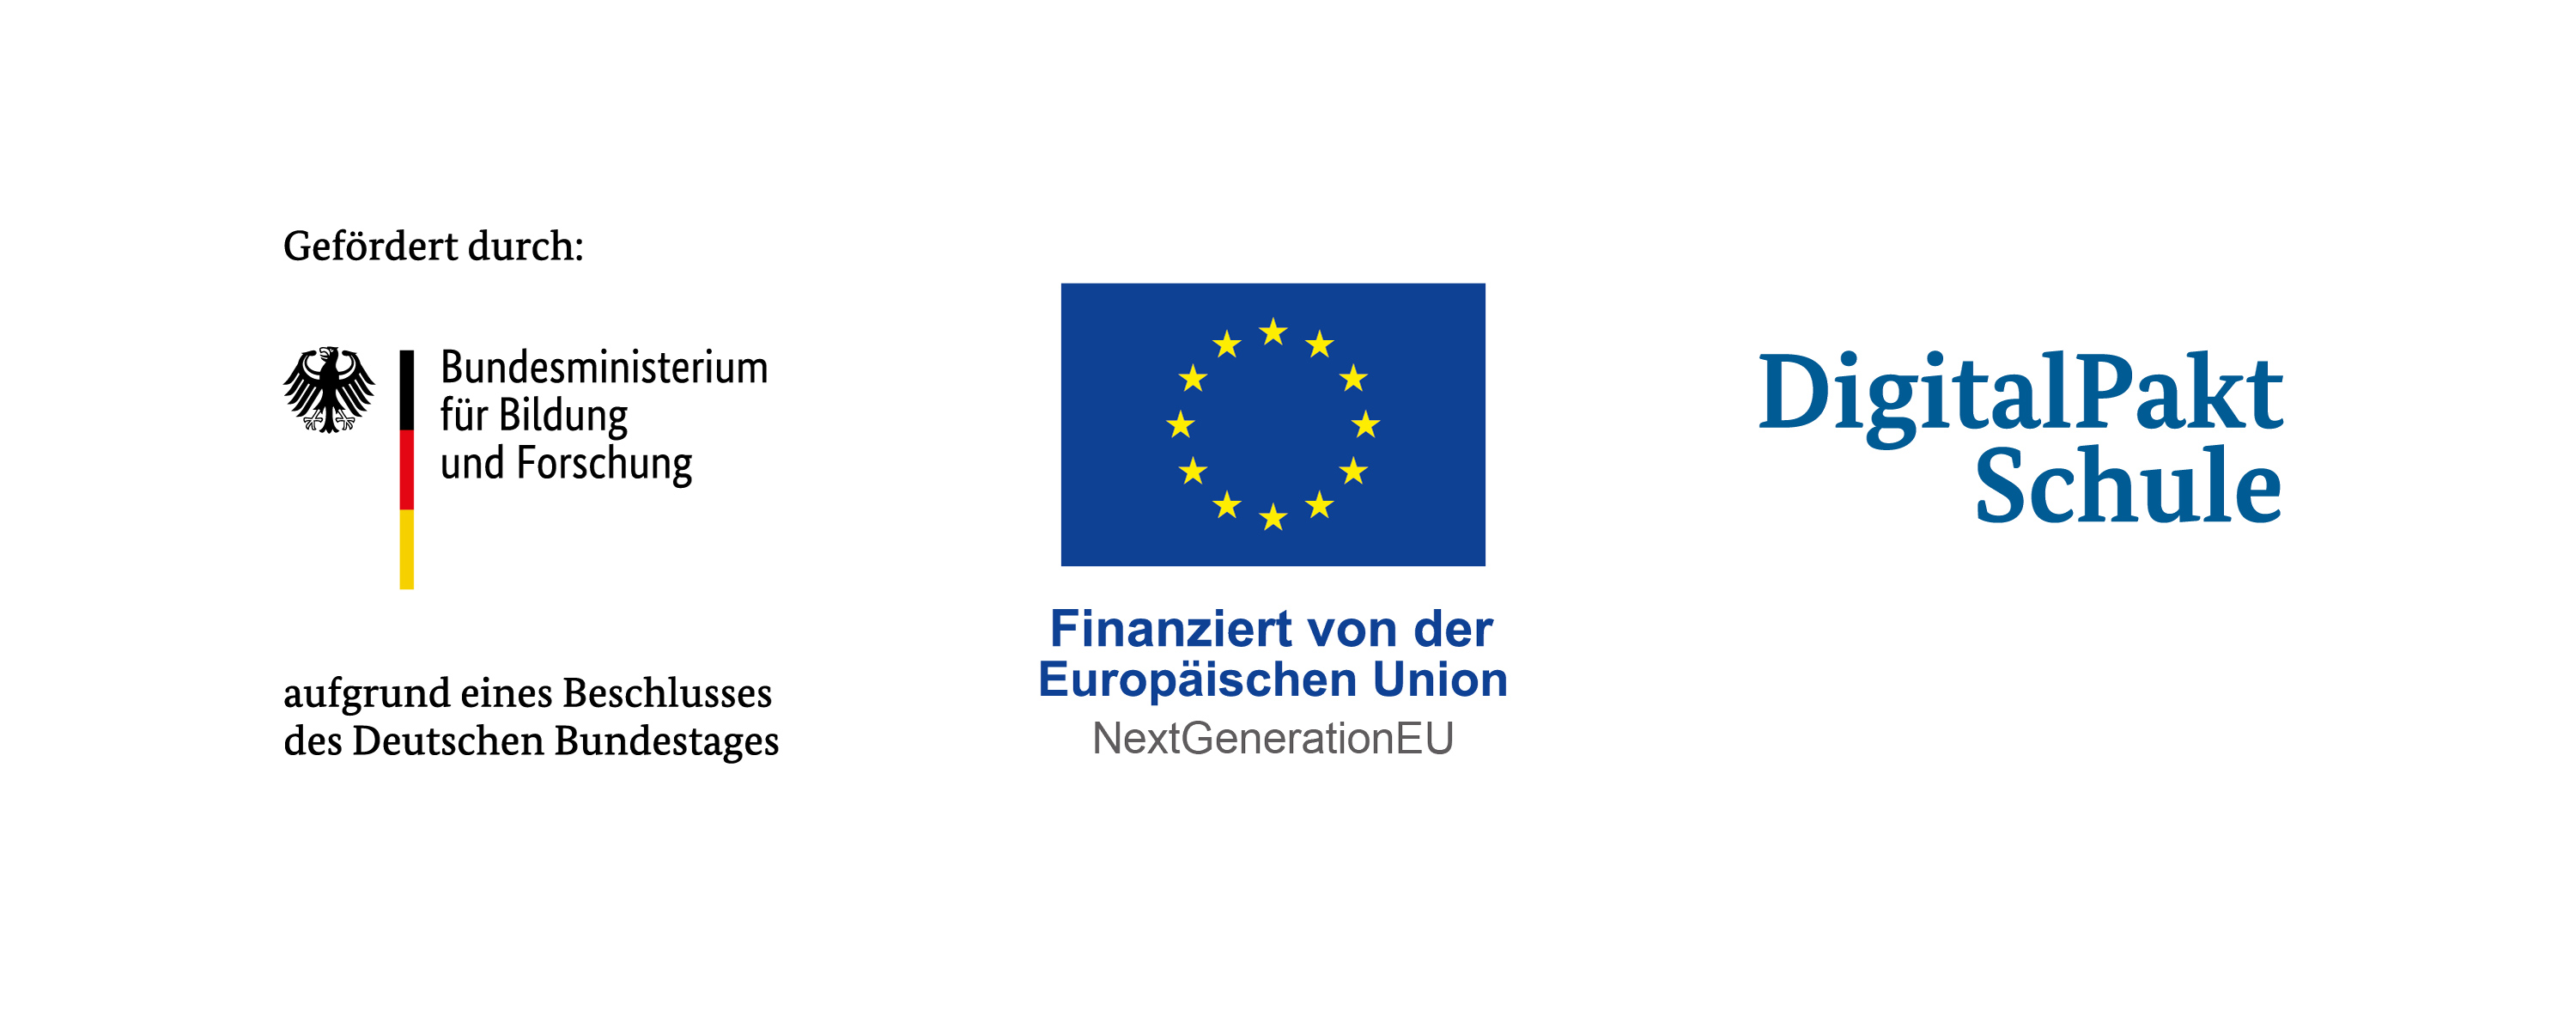 Logoleiste mit Logos des bundesministeriums für Bildung und Forschung sowie dem der Europäischen Union. Zusätzlich der Hinweis, dass das Projekt von diesen gefördert wird.